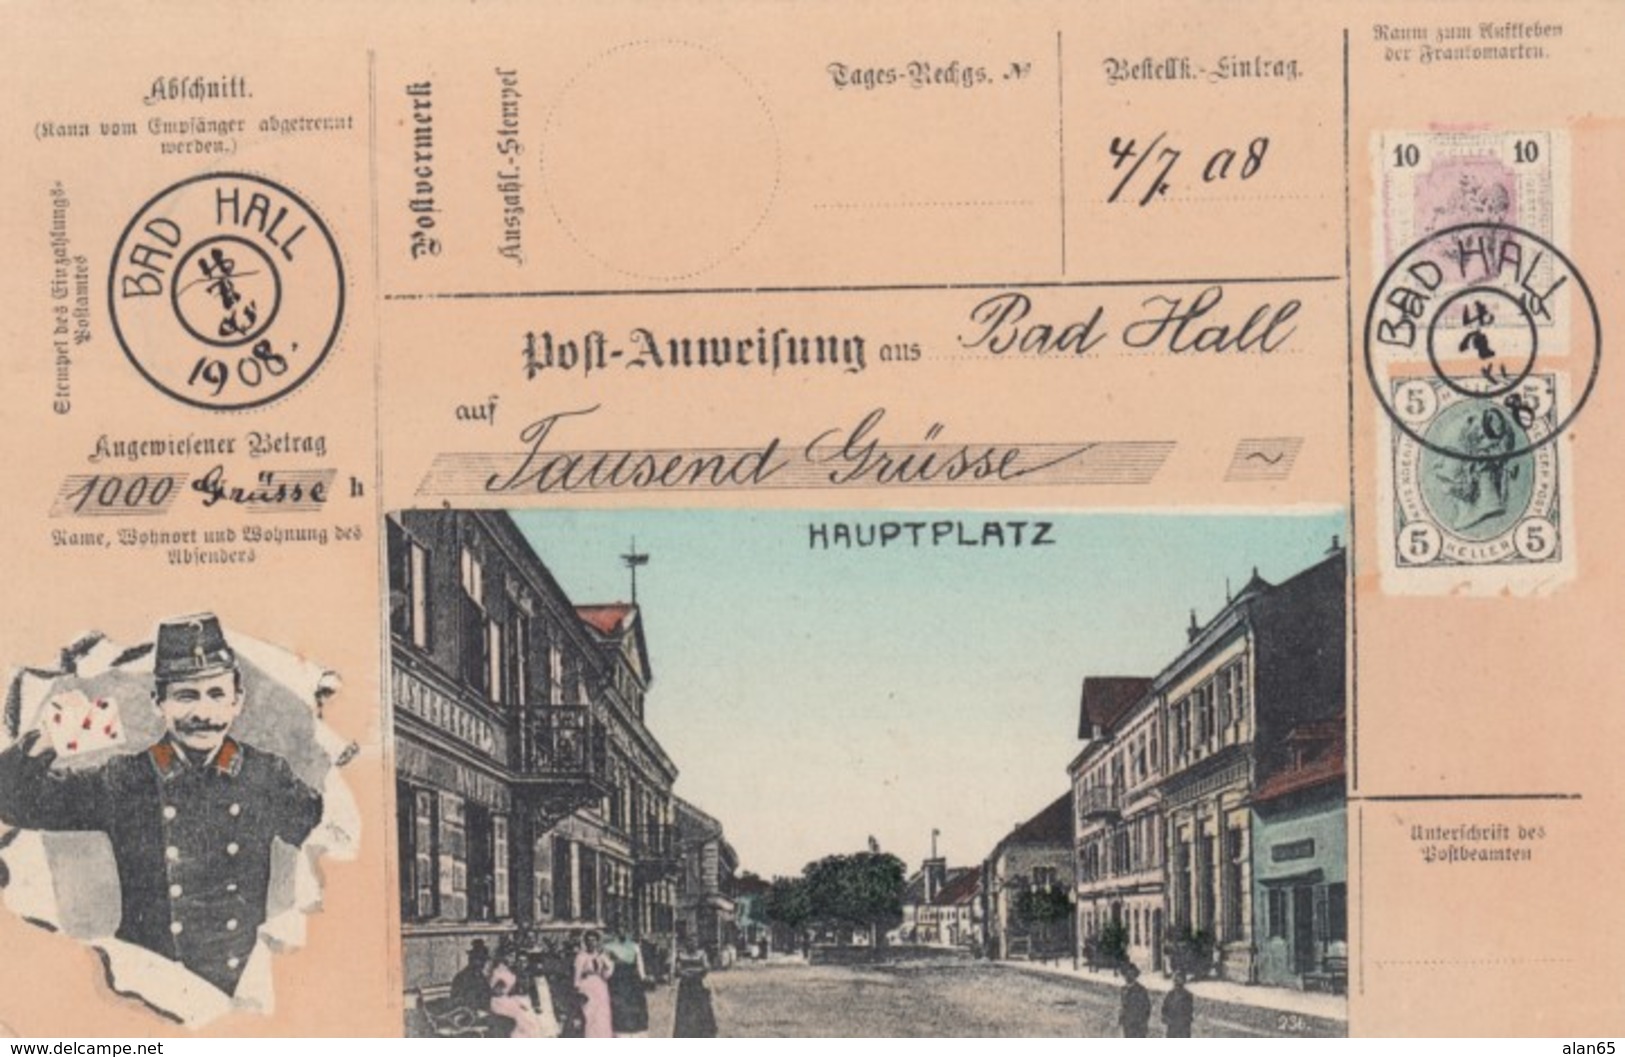 Hauptplatz Bad Hall Austria View, Austrian Mail Service Theme, Postman, Facsimile Stamps Image, C1900s Vintage Postcard - Postal Services